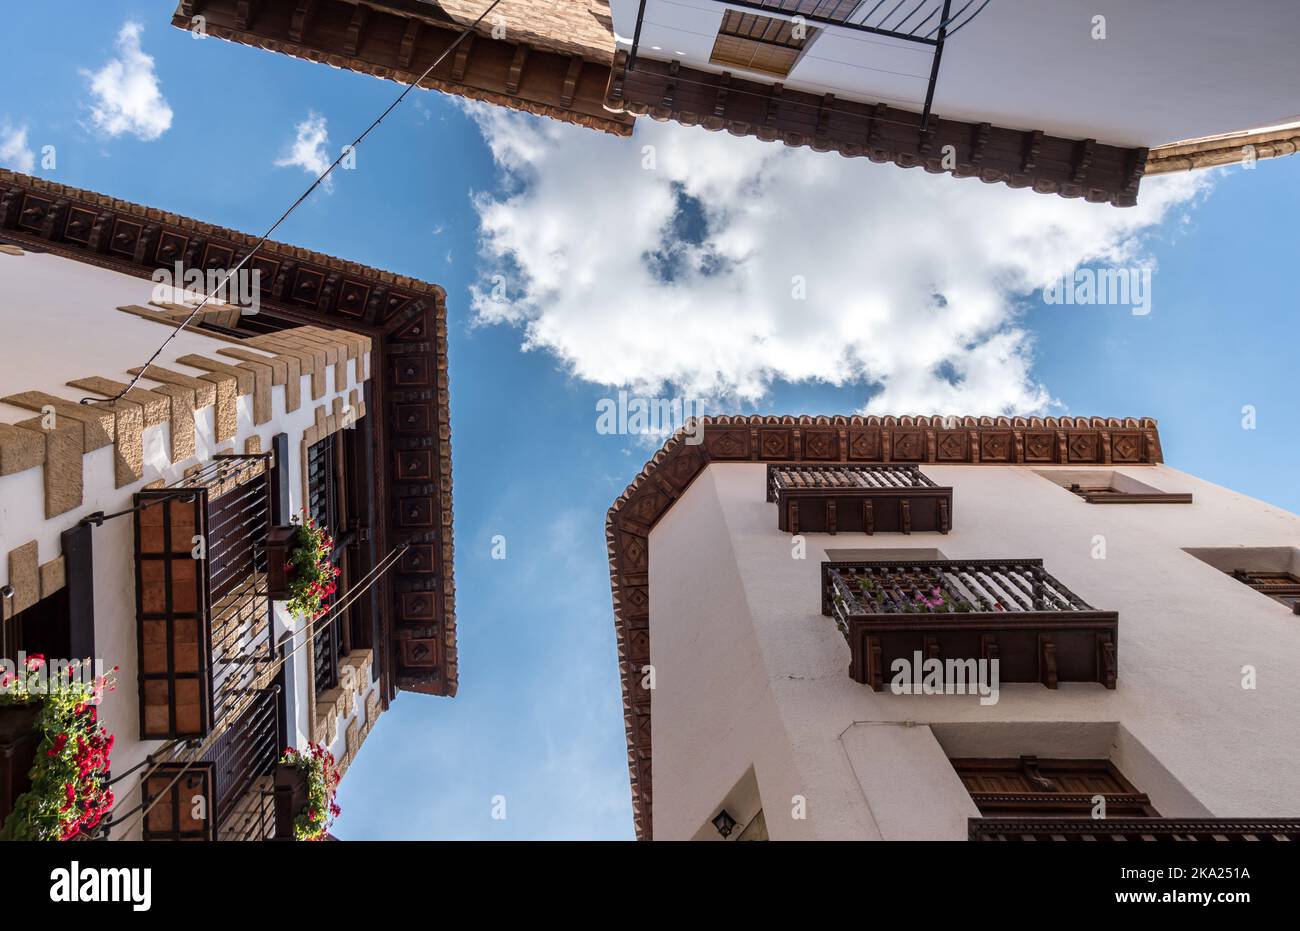 Navate in legno di case vecchio villaggio di Spagna, scultura in legno blu cielo e nuvole vista, edificio tradizionale architettura Foto Stock